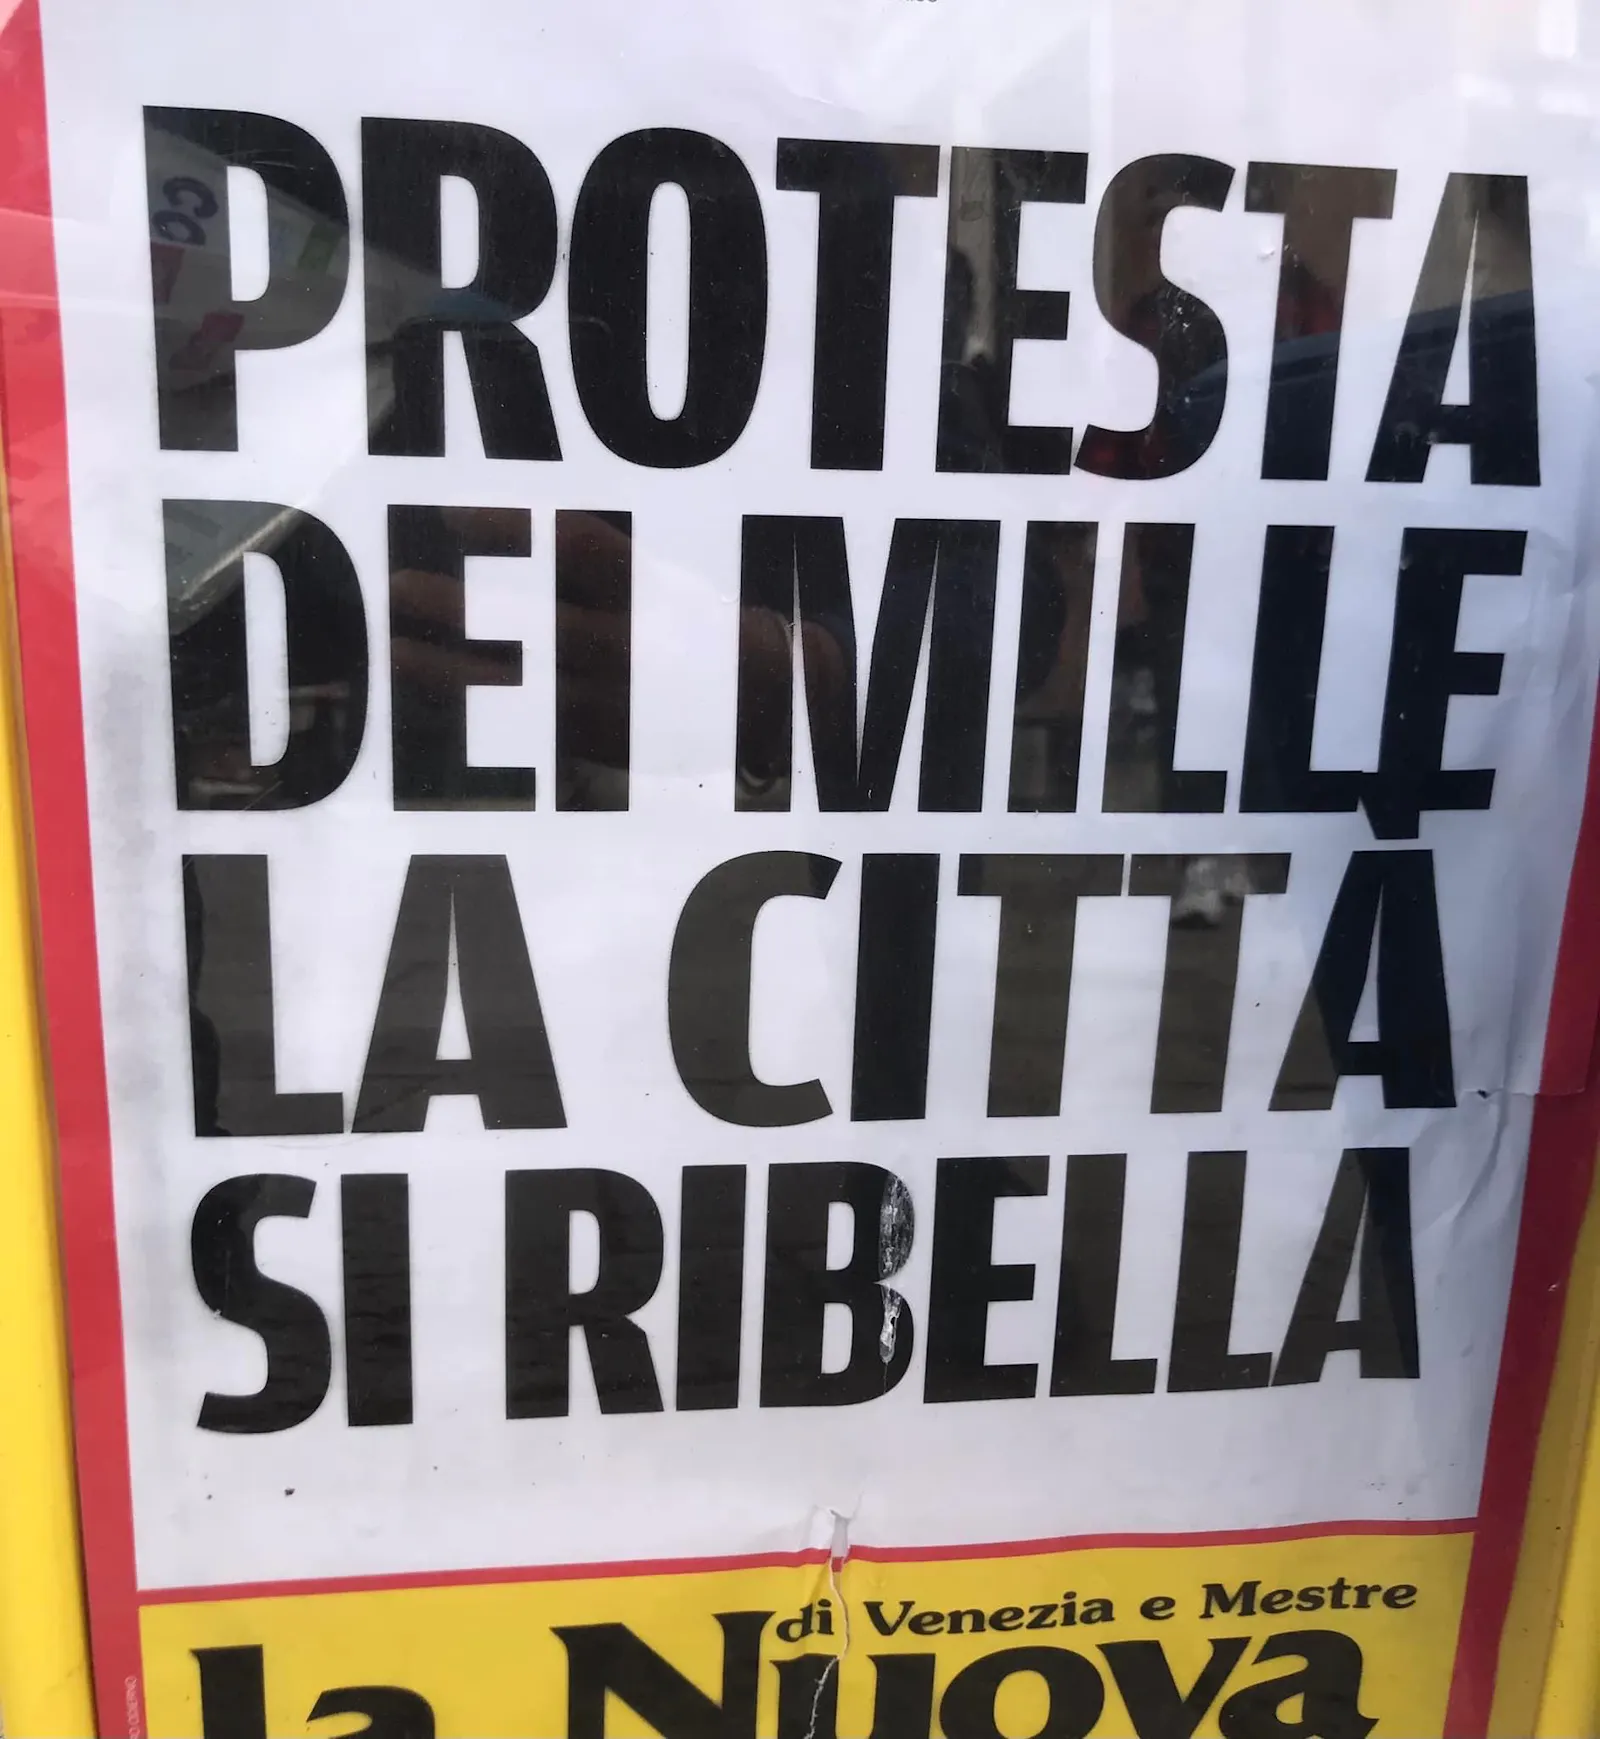 Protest der Tausend. Die Stadt rebelliert - lautet die Zeitungsüberschrift der Nuova.